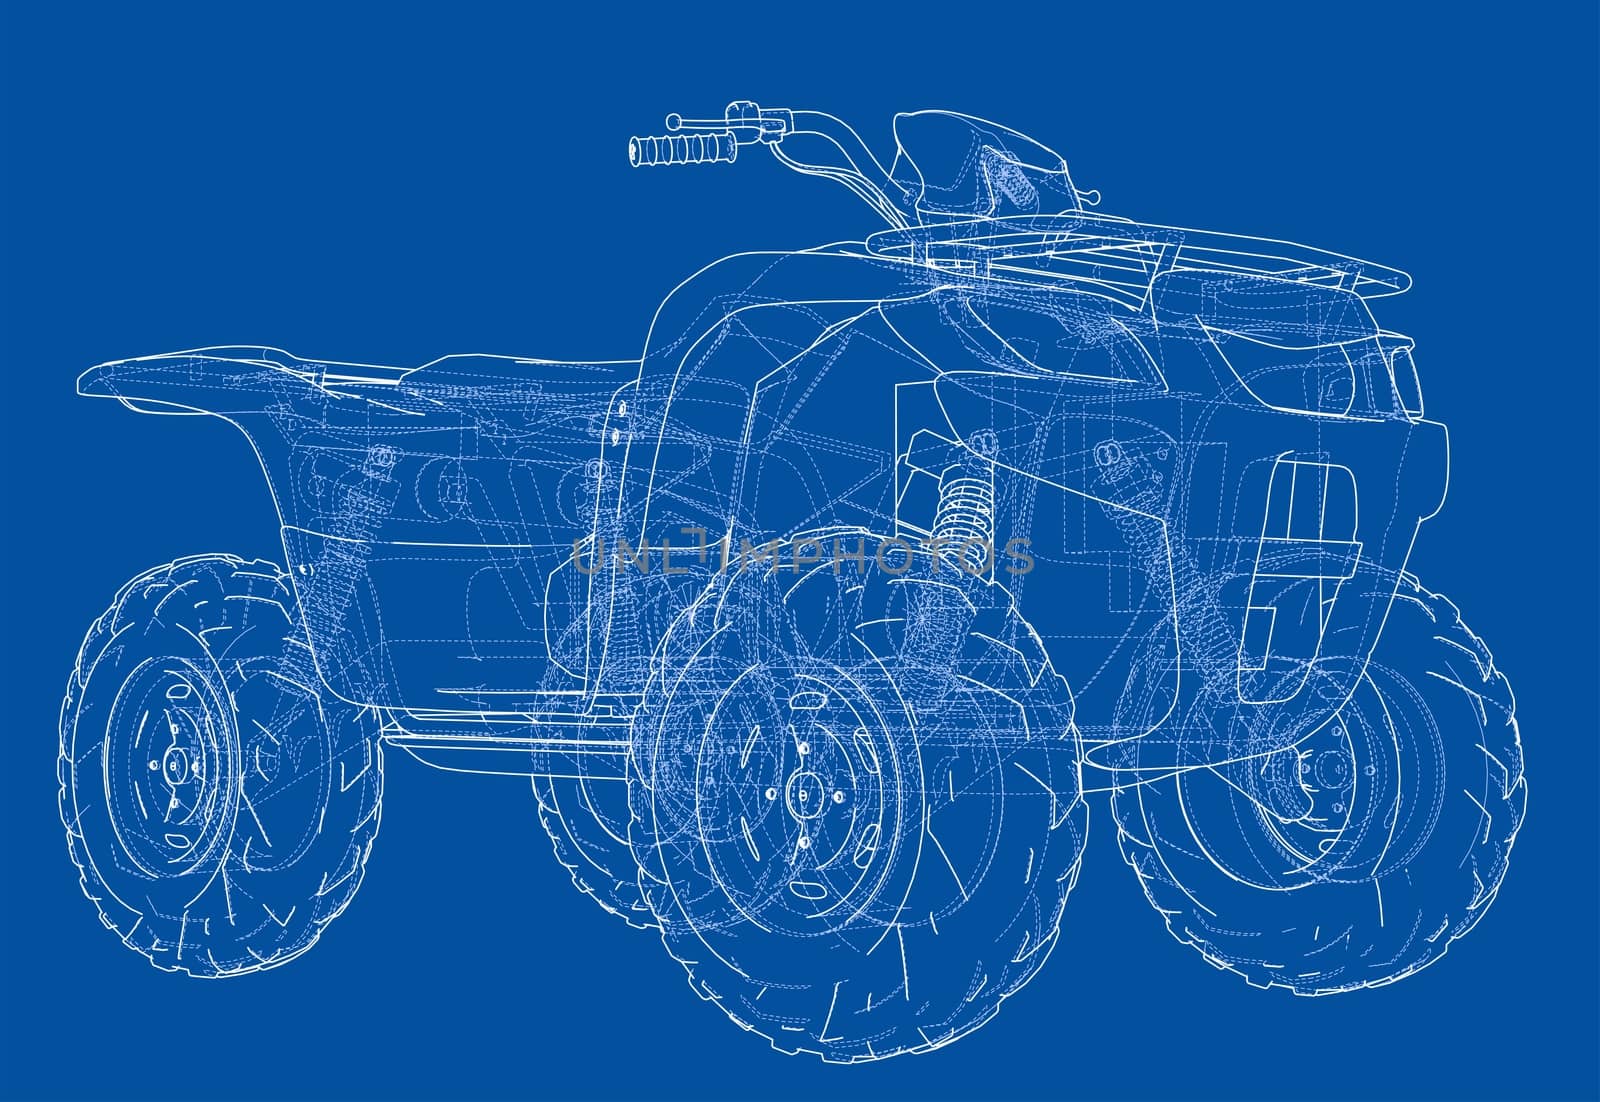 ATV quadbike concept outline by cherezoff